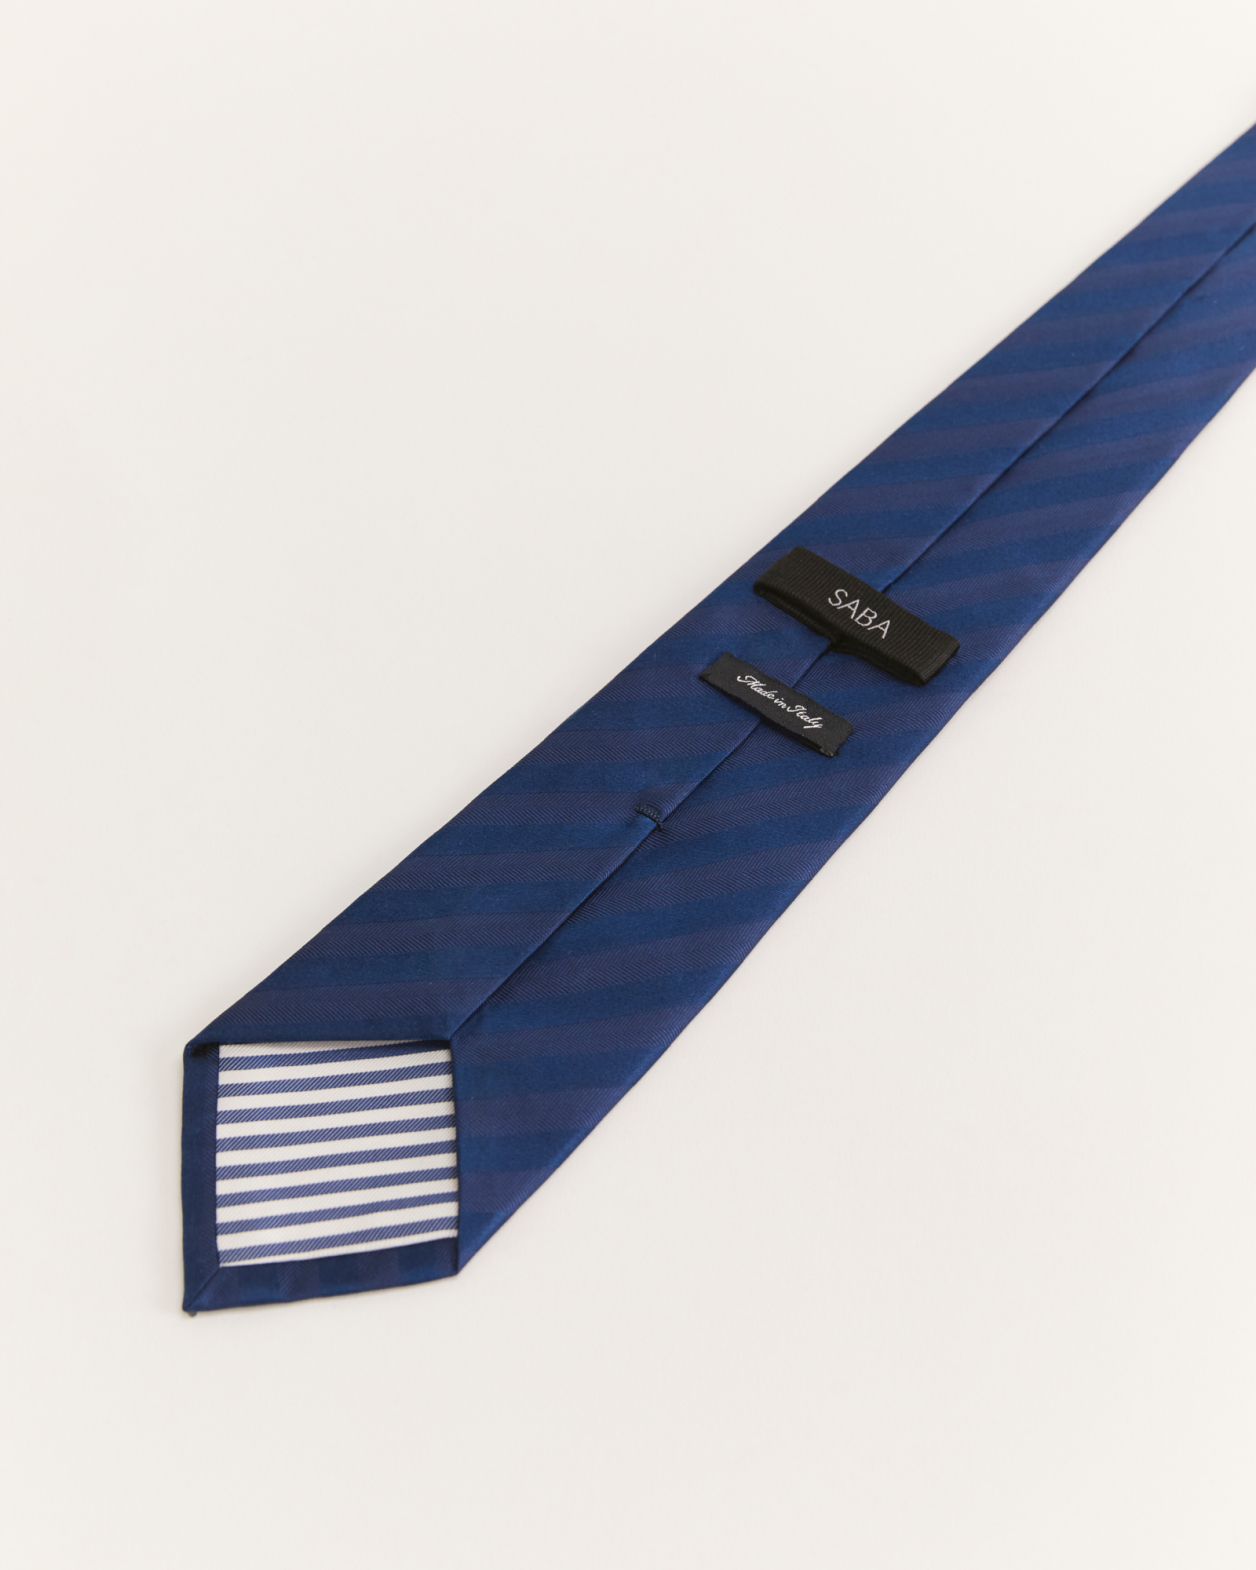 Silk Twill Stripe Tie in NAVY